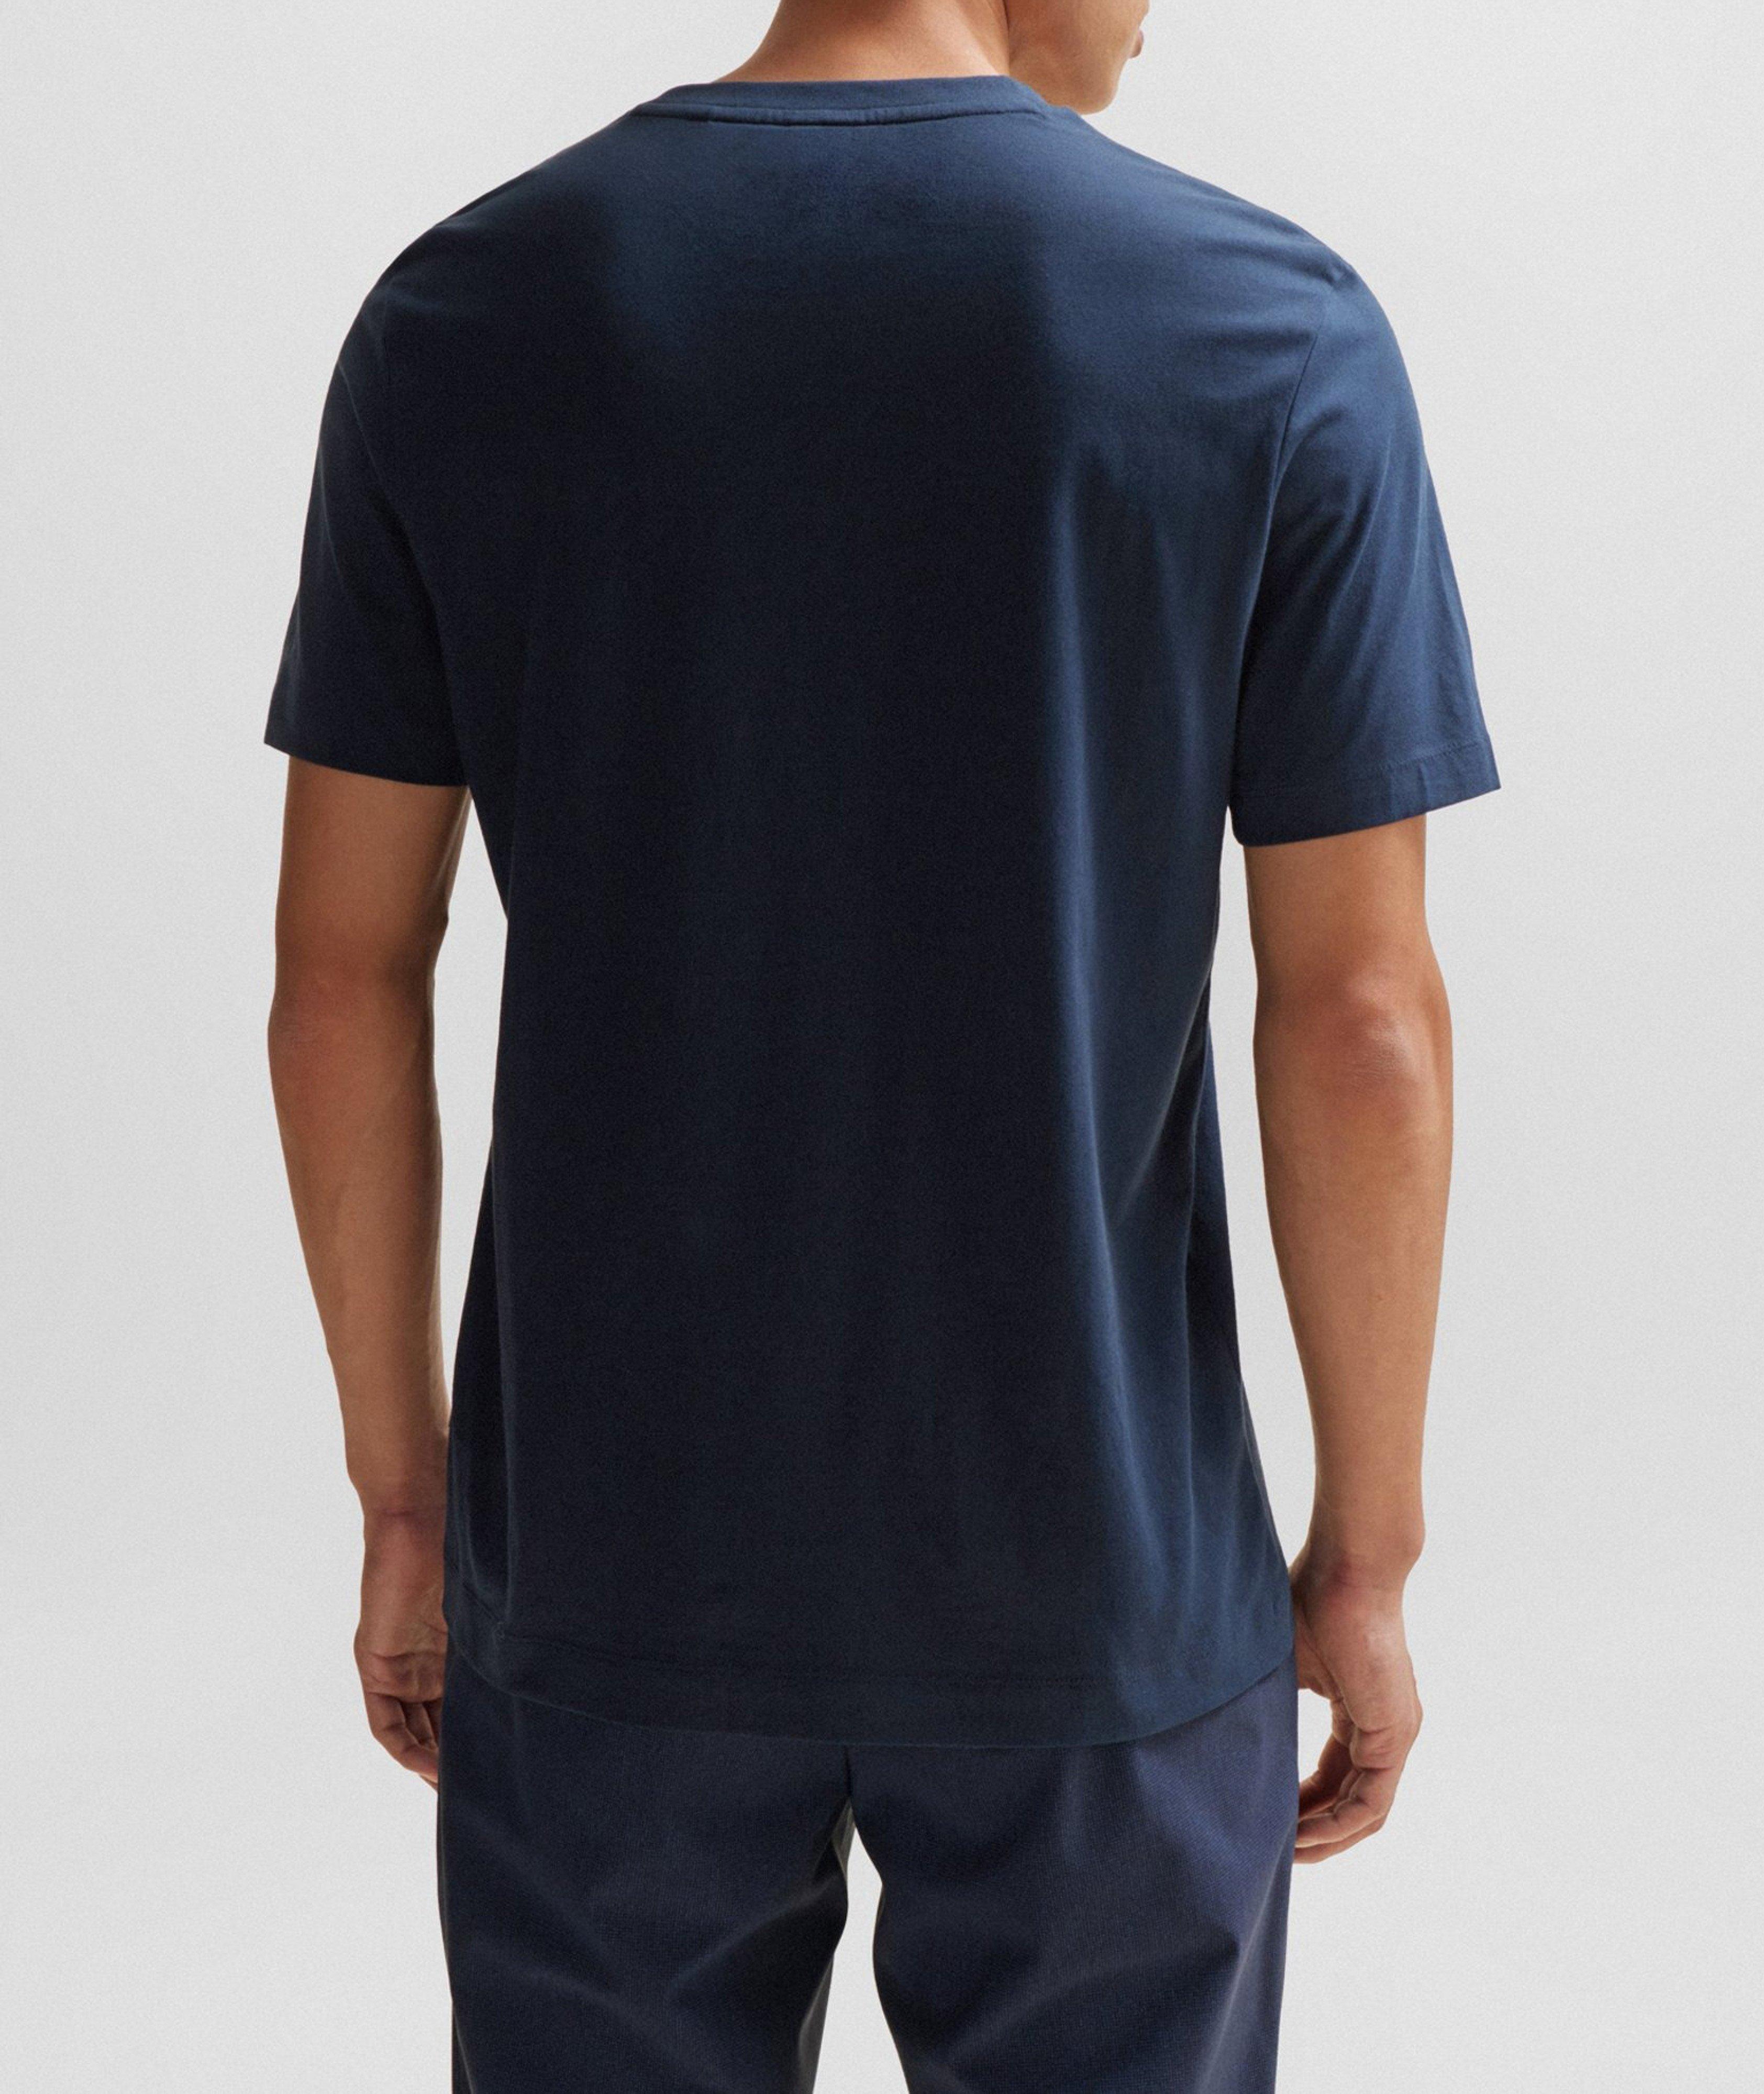 Tessler Mercerised Cotton Jersey T-Shirt image 2